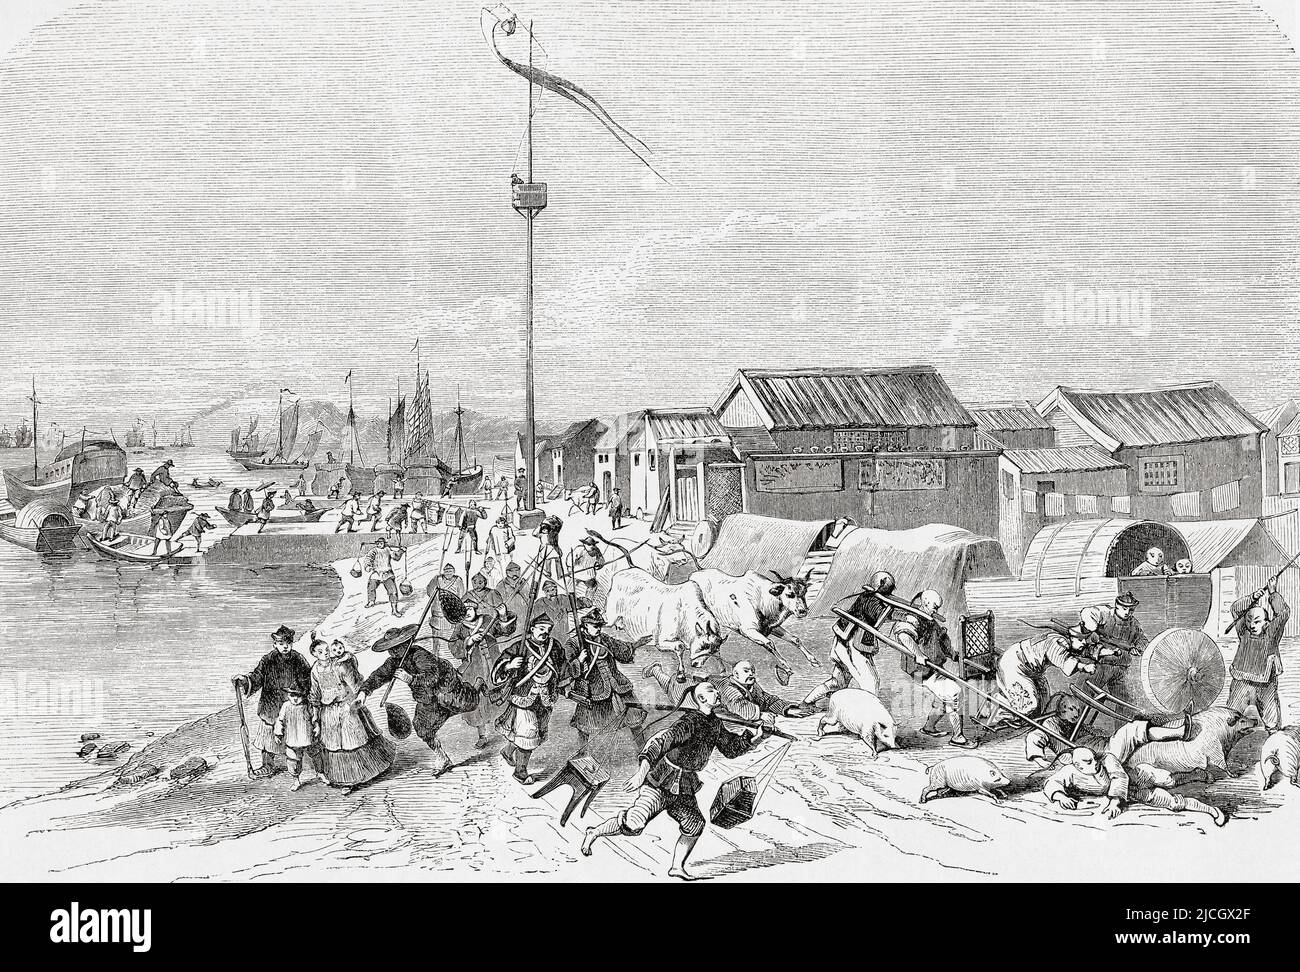 Perturbations dans la zone des quais de Canton (aujourd'hui Guangzhou), Chine pendant la rébellion turbère rouge de 1854 - 1856. De l'Univers illustrae, publié Paris, 1859 Banque D'Images